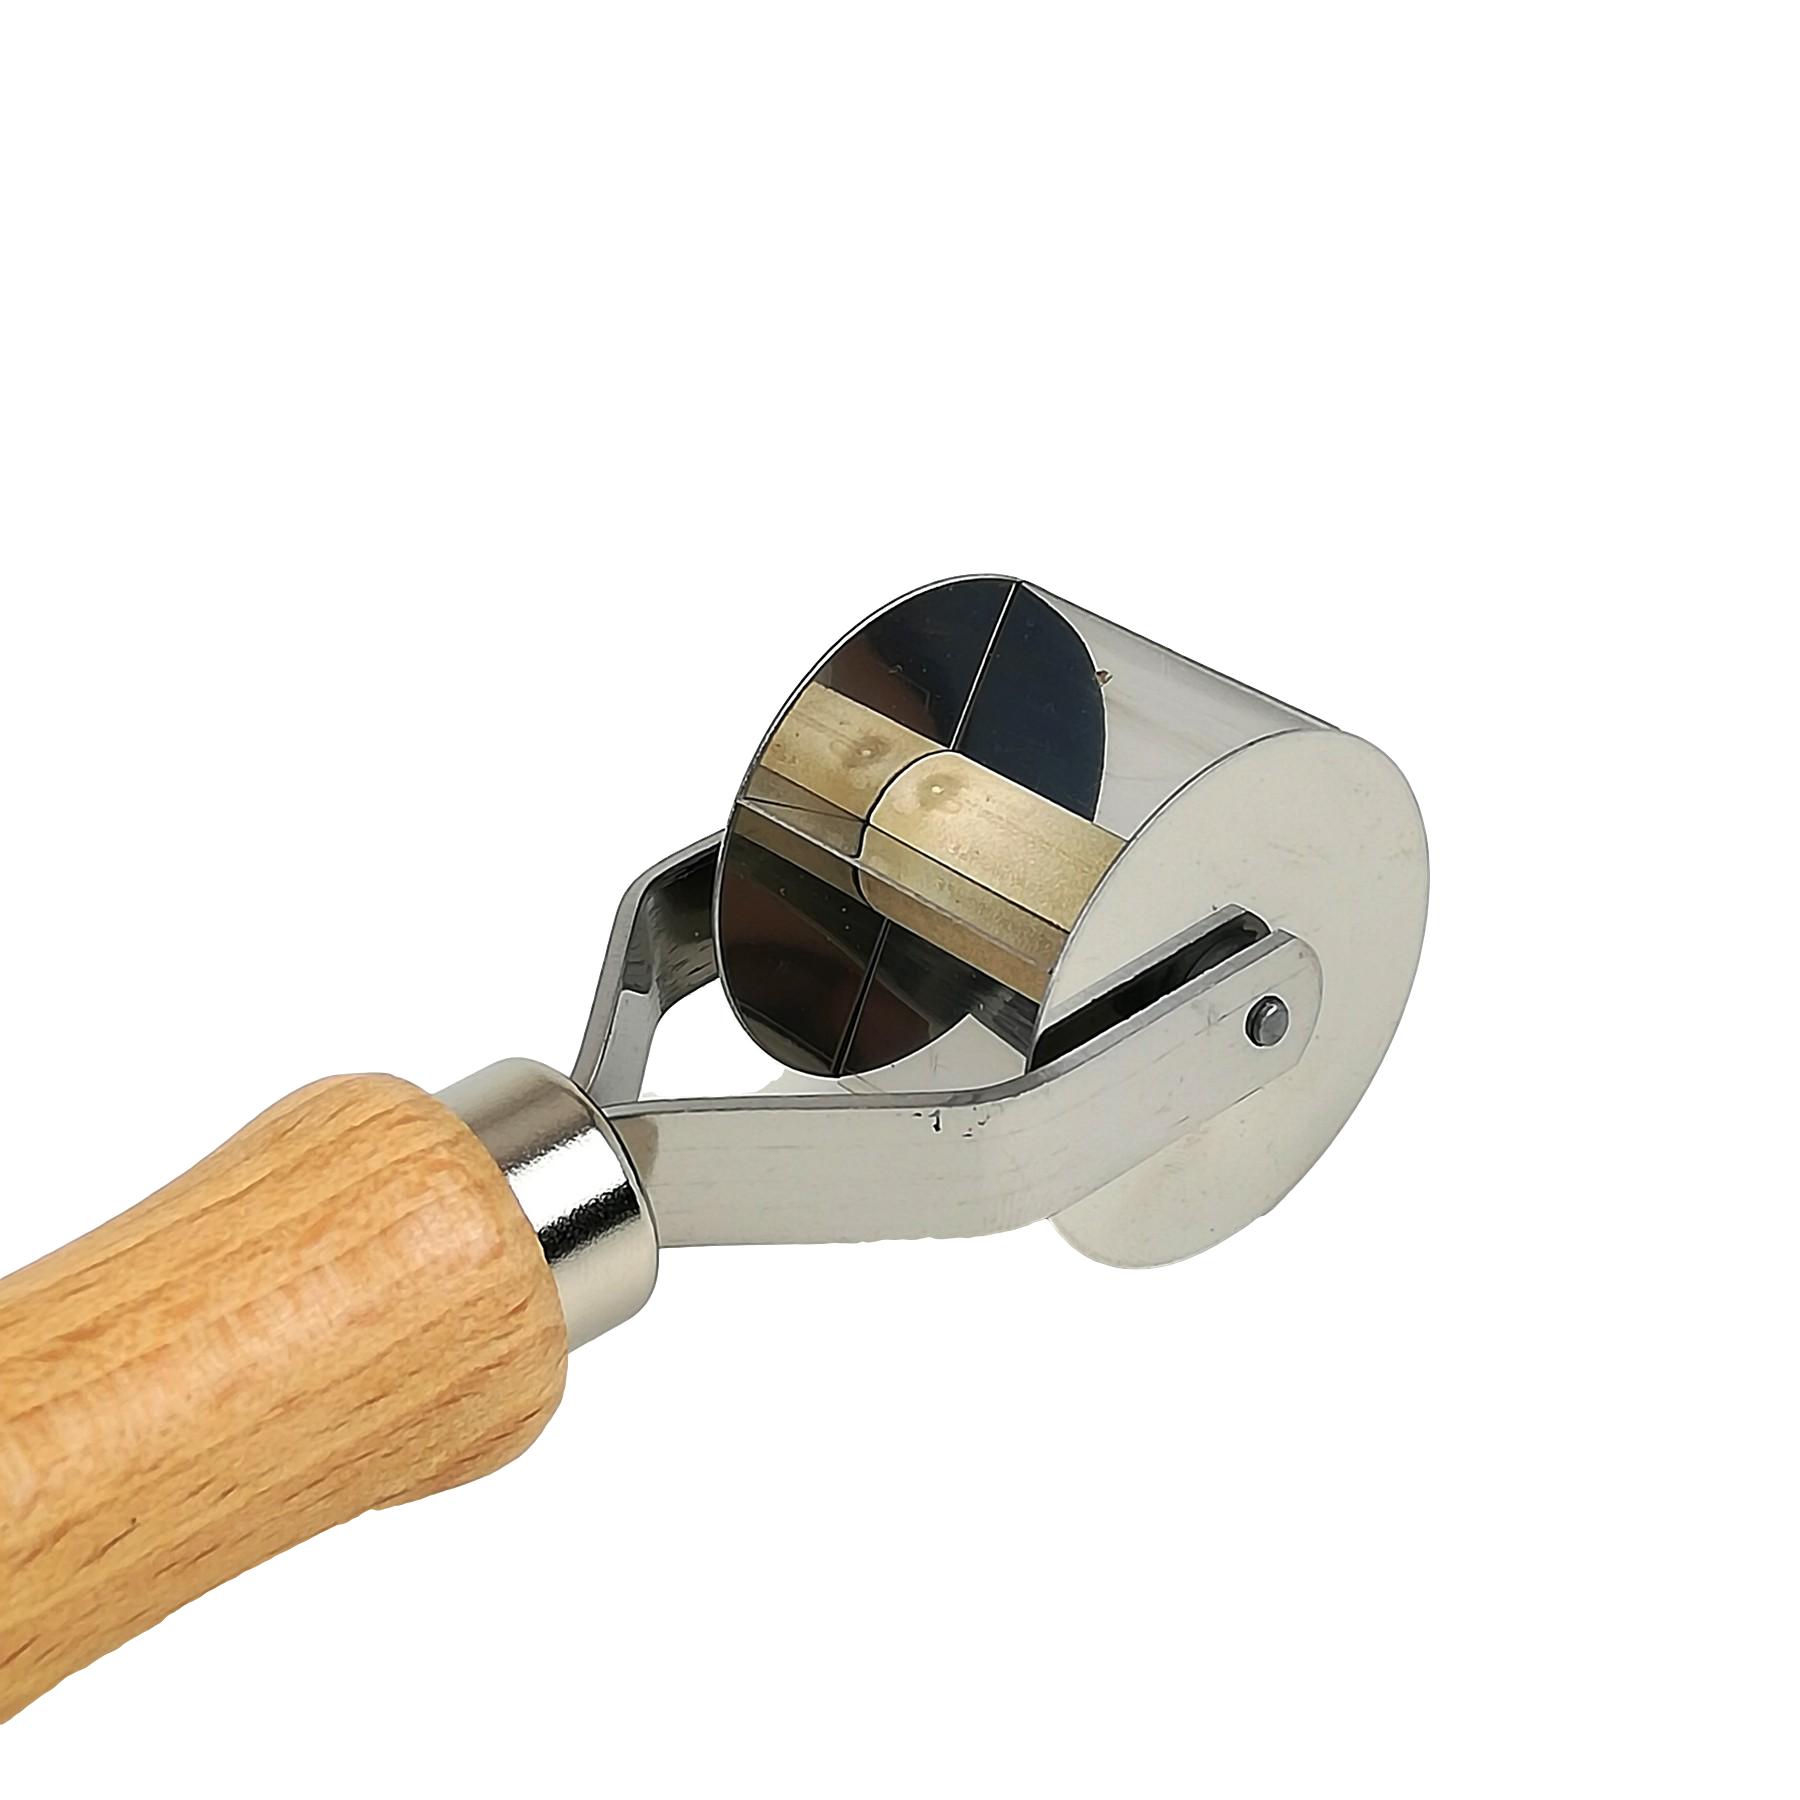 Rotella tagliapasta tortellini acciaio inox liscio – 28 mm – Passione Casa